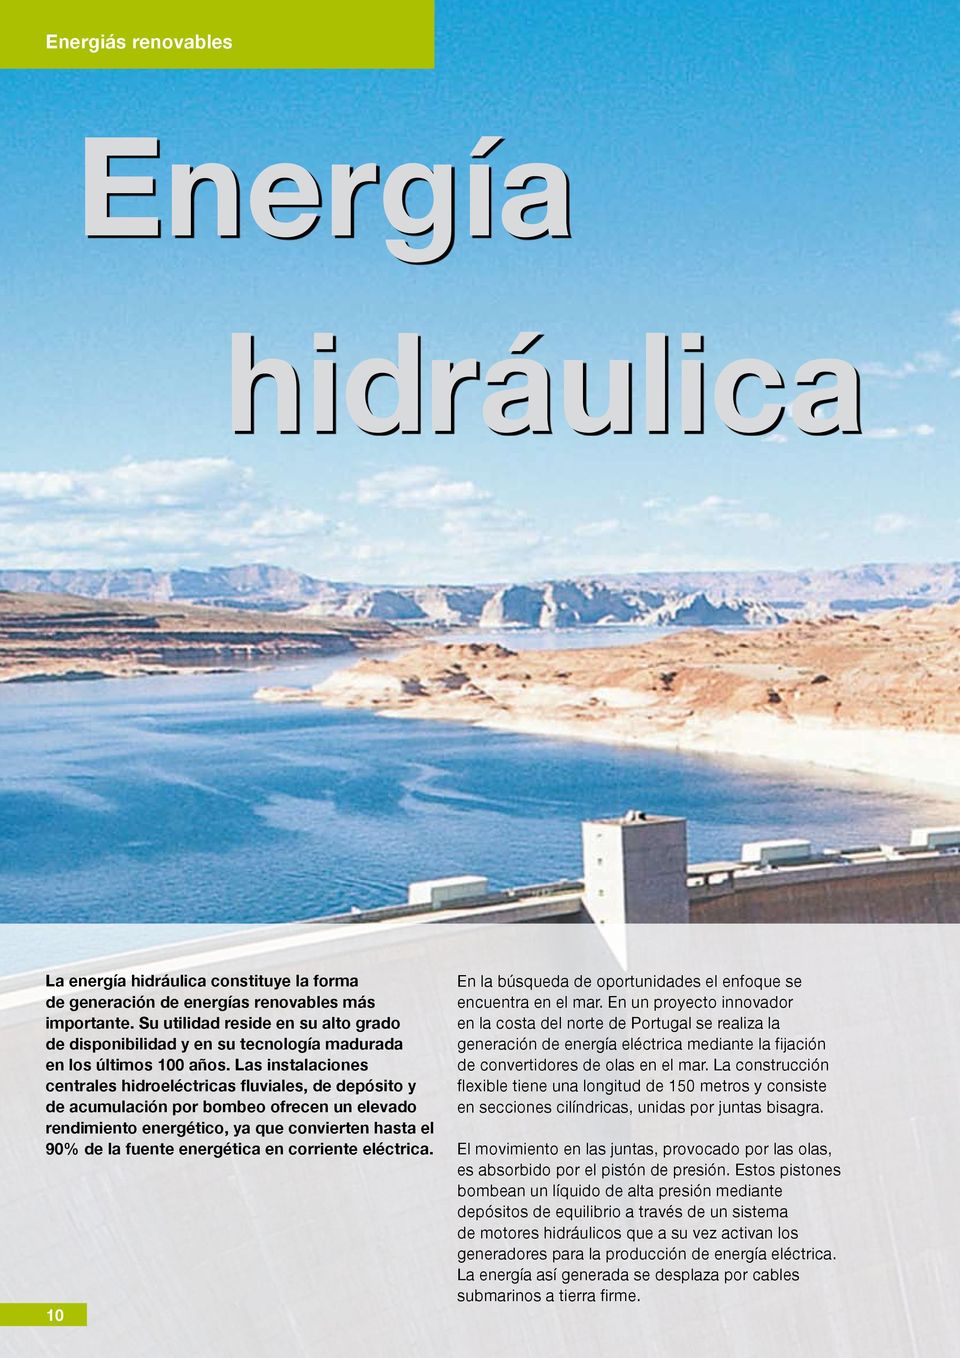 Las instalaciones centrales hidroeléctricas fluviales, de depósito y de acumulación por bombeo ofrecen un elevado rendimiento energético, ya que convierten hasta el 90% de la fuente energética en